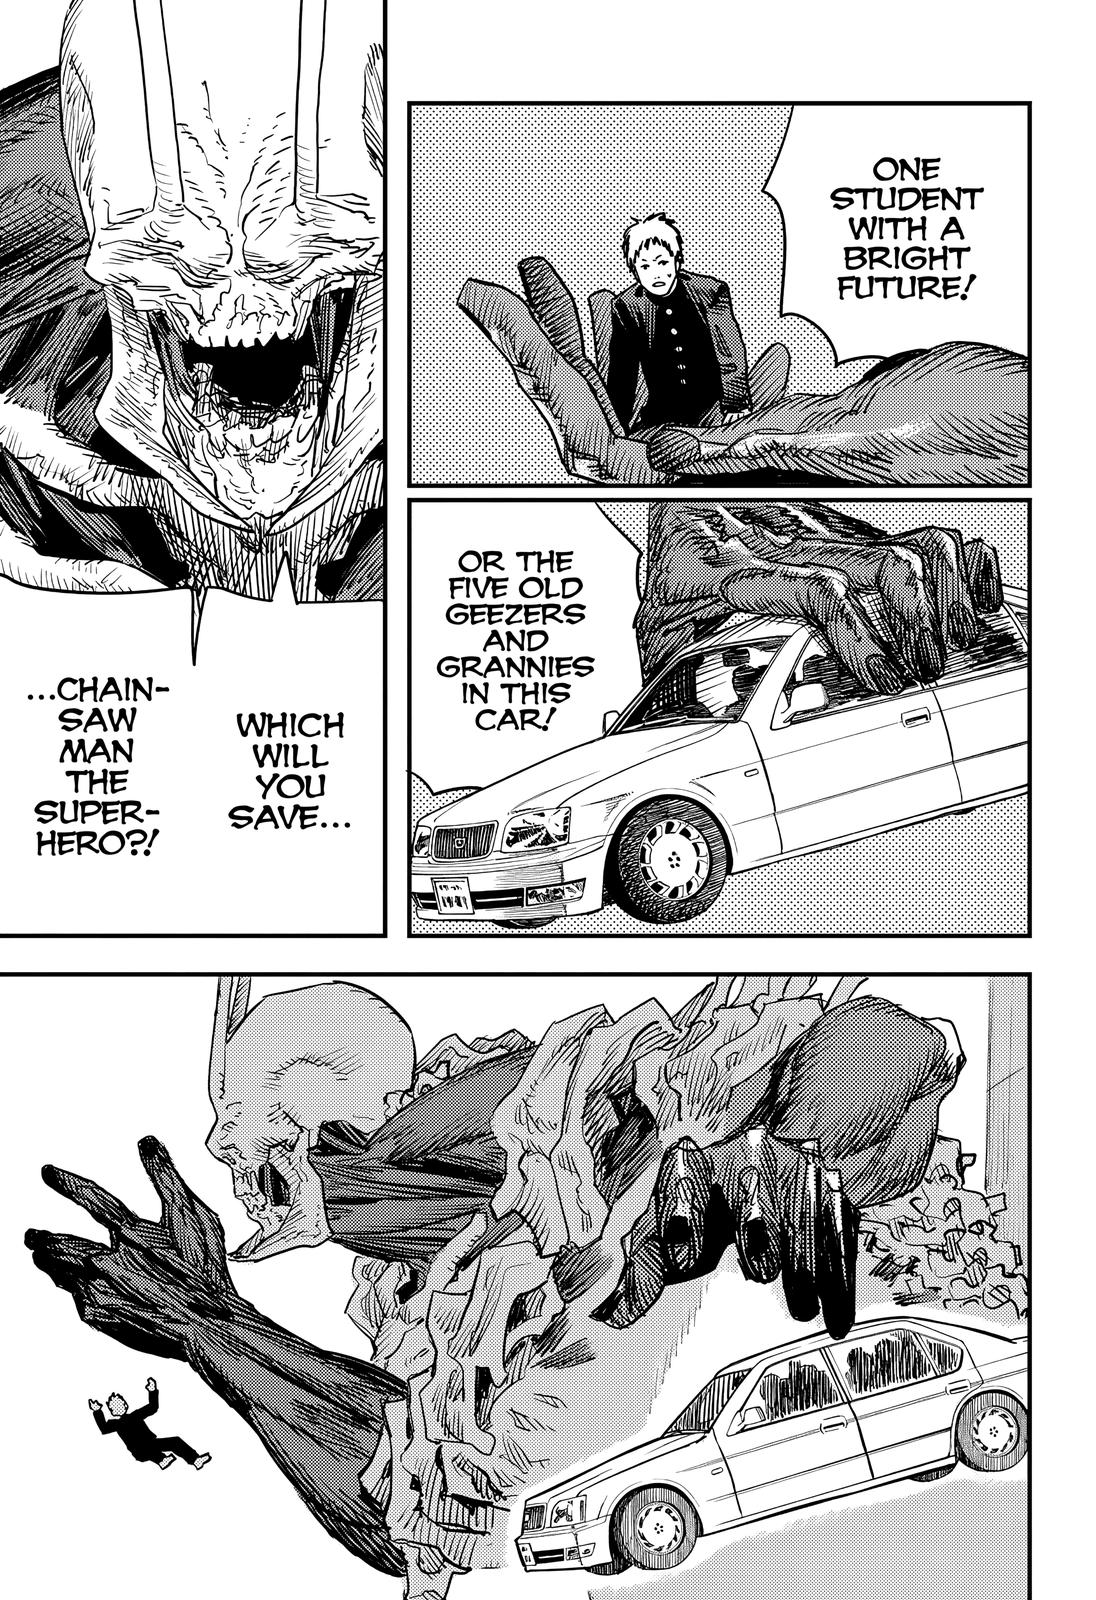 Chainsaw Man Manga Chapter - 102 - image 35